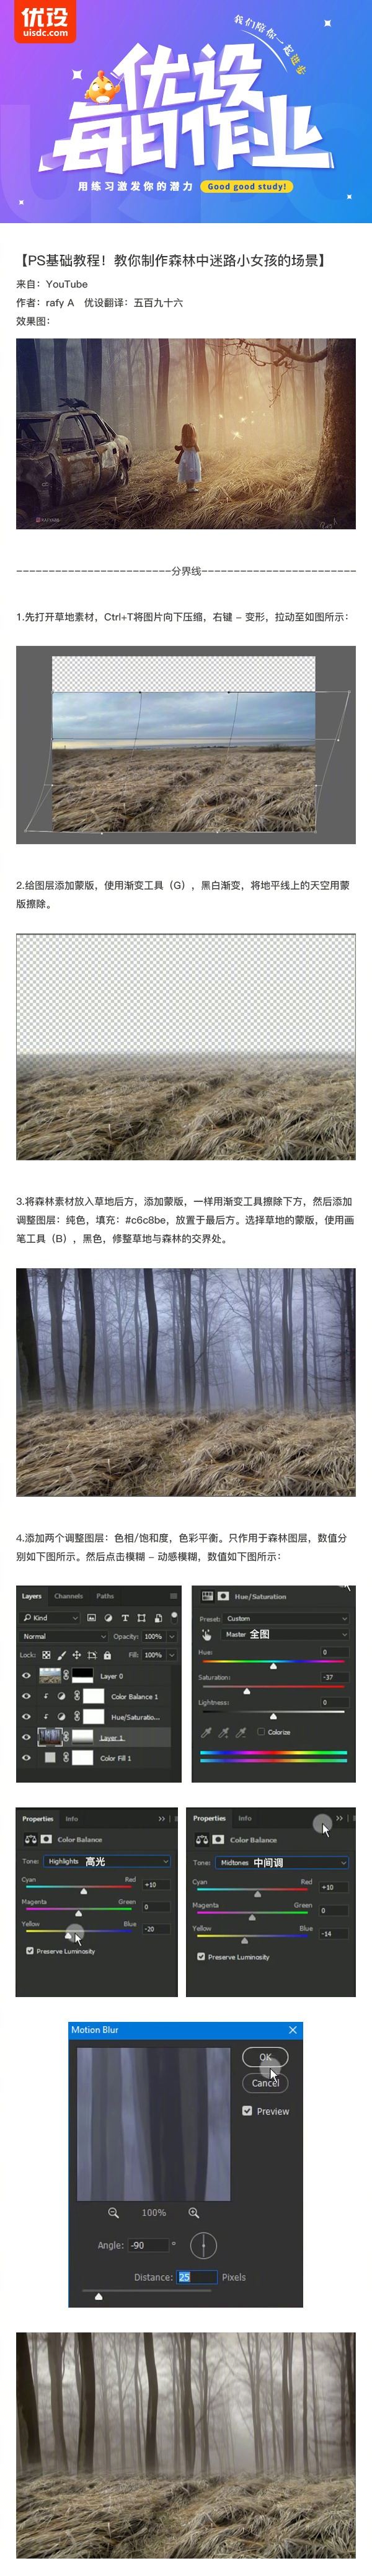 Photoshop合成在梦幻森林中的小女孩场景,PS教程,素材中国网